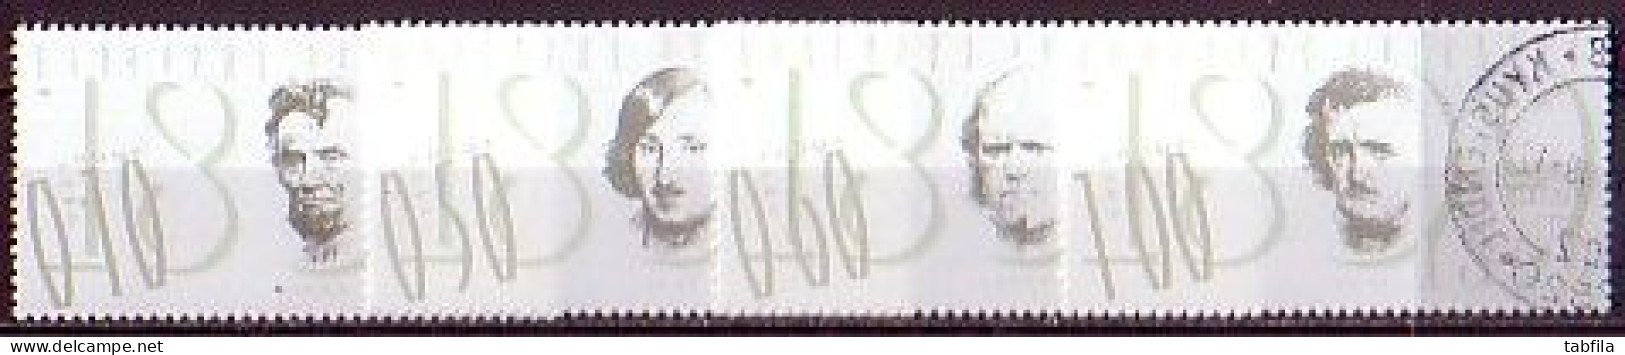 BULGARIA - 2009 - 200 Ans De La Naissance De Ch.Daervin, A.Lincoln, E.Poe, Gogol - 4v Used - Used Stamps